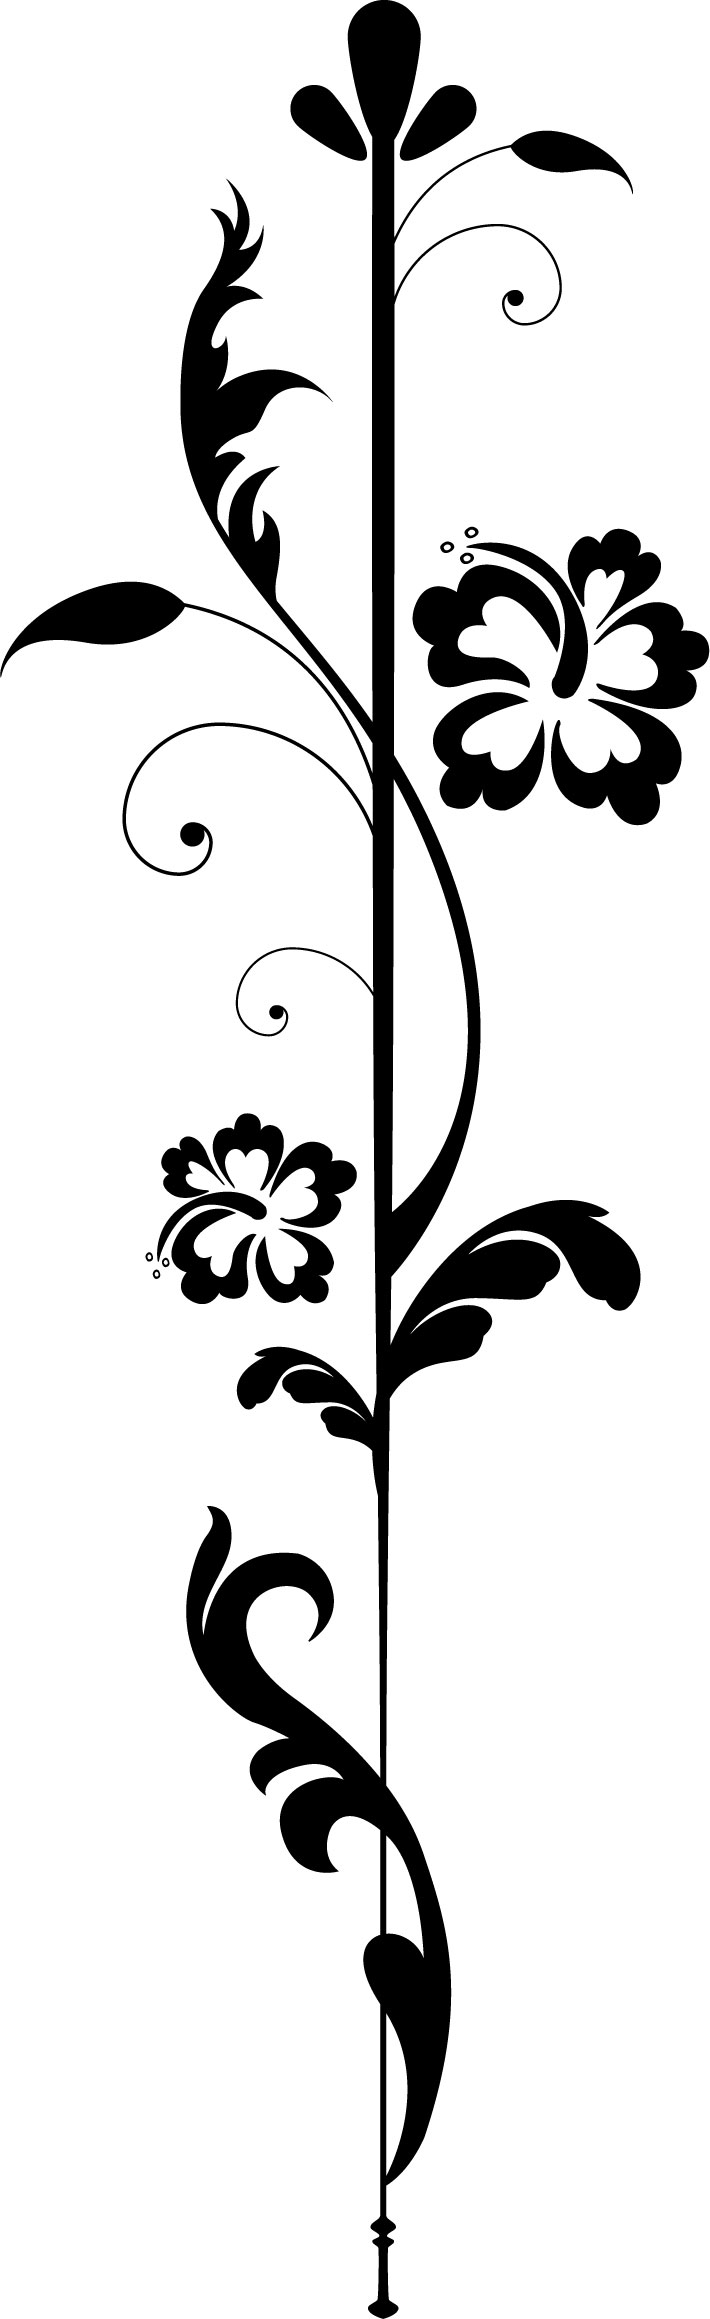 花のイラスト フリー素材 フレーム枠no 2 白黒 葉 縦線